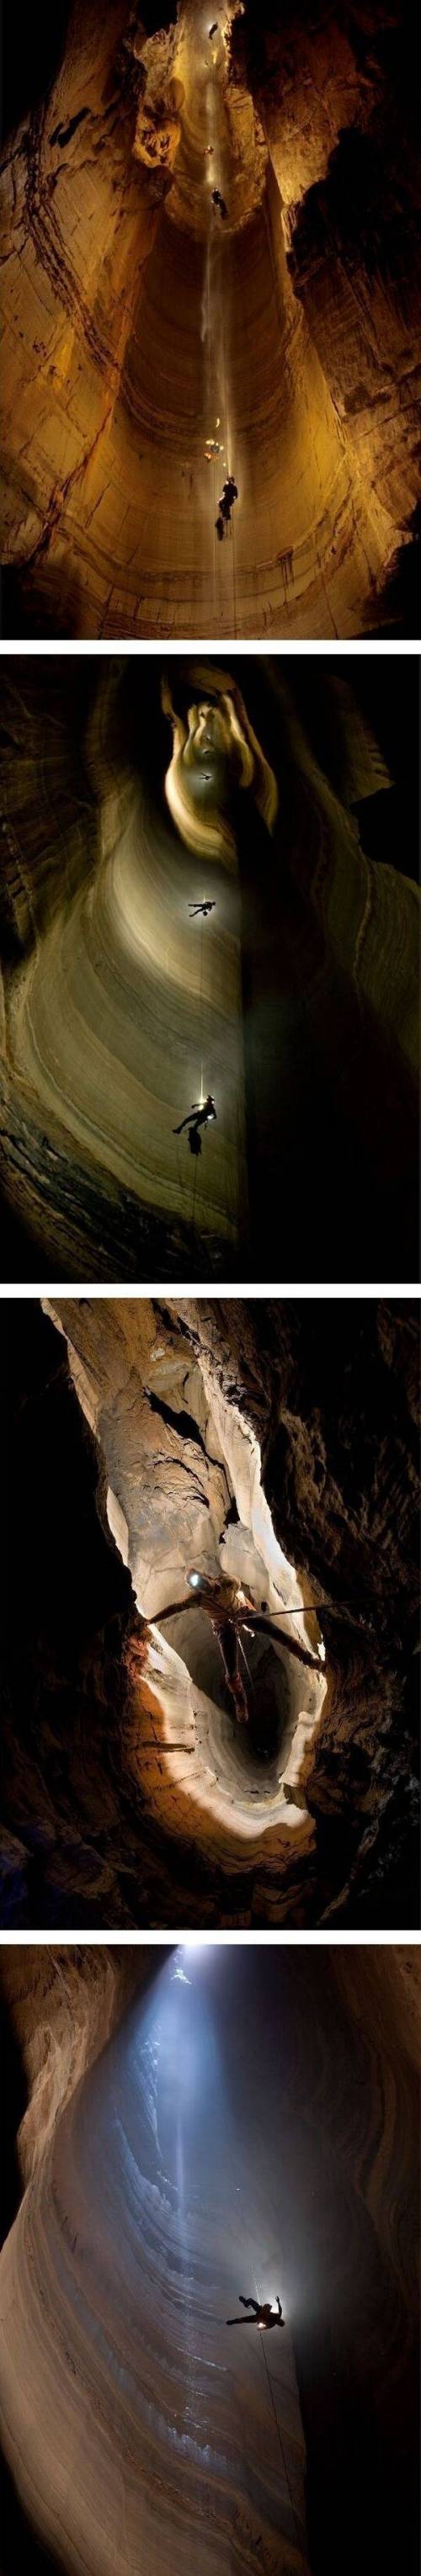 [스압] 1026미터 동굴.jpg